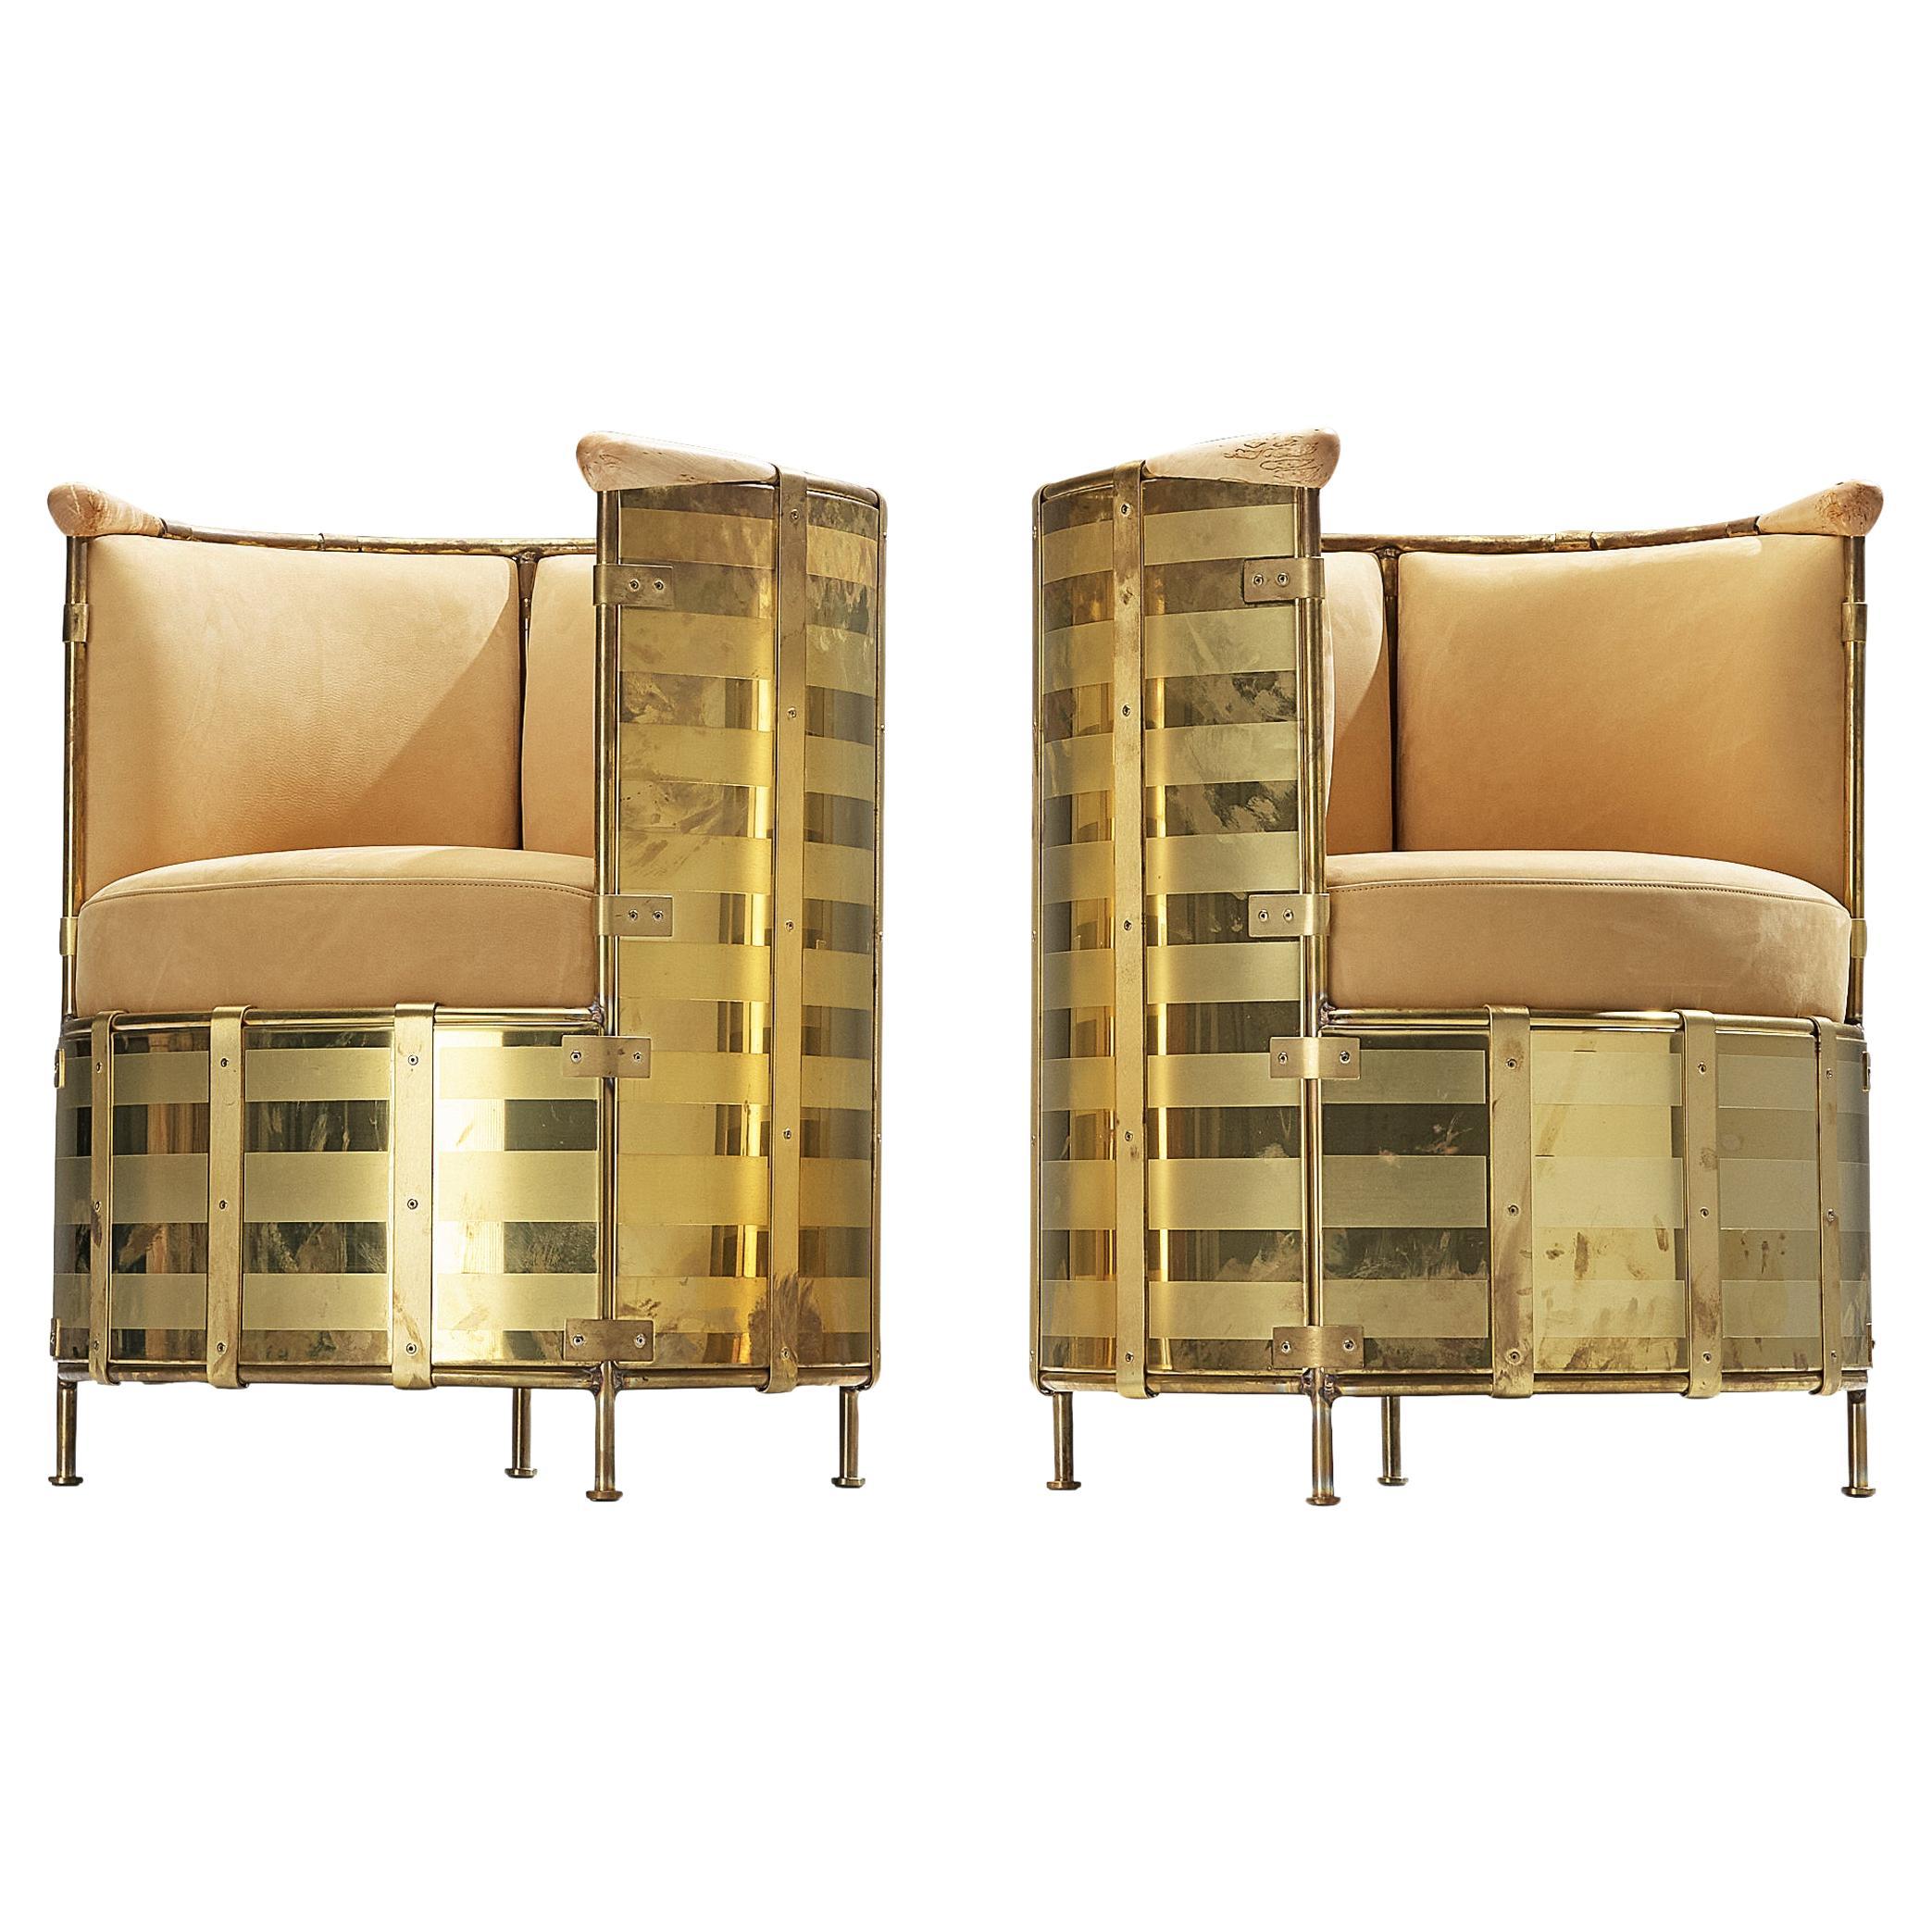 Mats Theselius for Källemo AB Limited Edition Lounge Chairs 'El Dorado' (Chaises longues en édition limitée) 